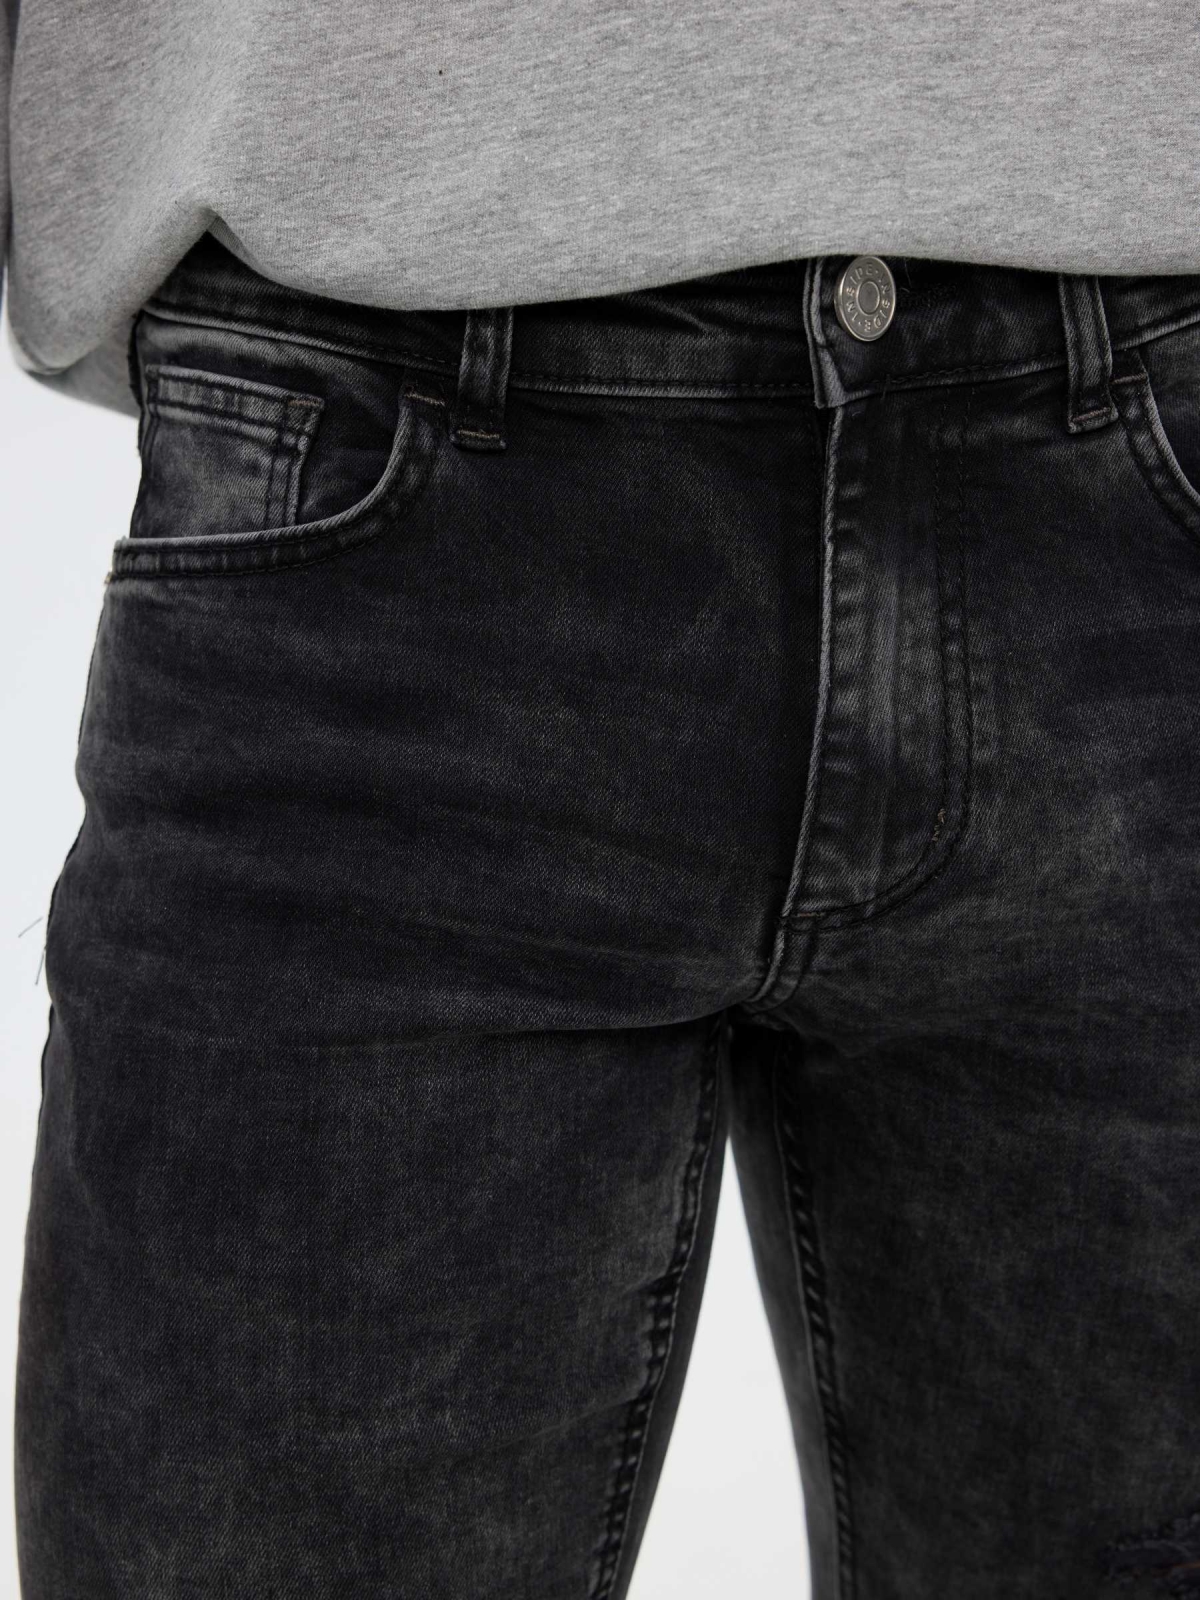 Super slim jeans dark grey foreground